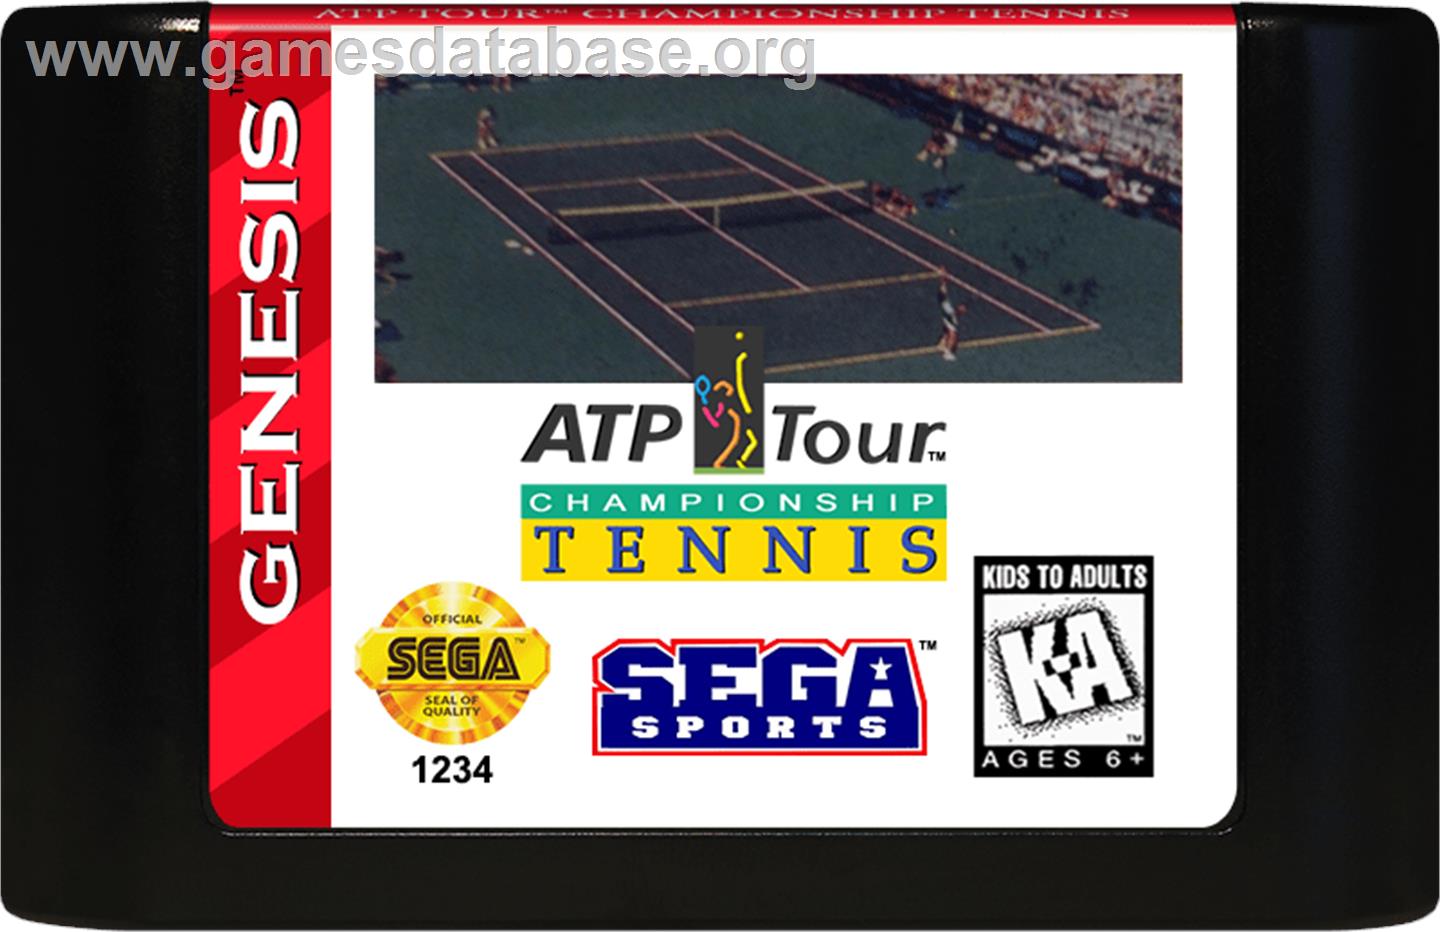 ATP Tour Championship Tennis - Sega Genesis - Artwork - Cartridge